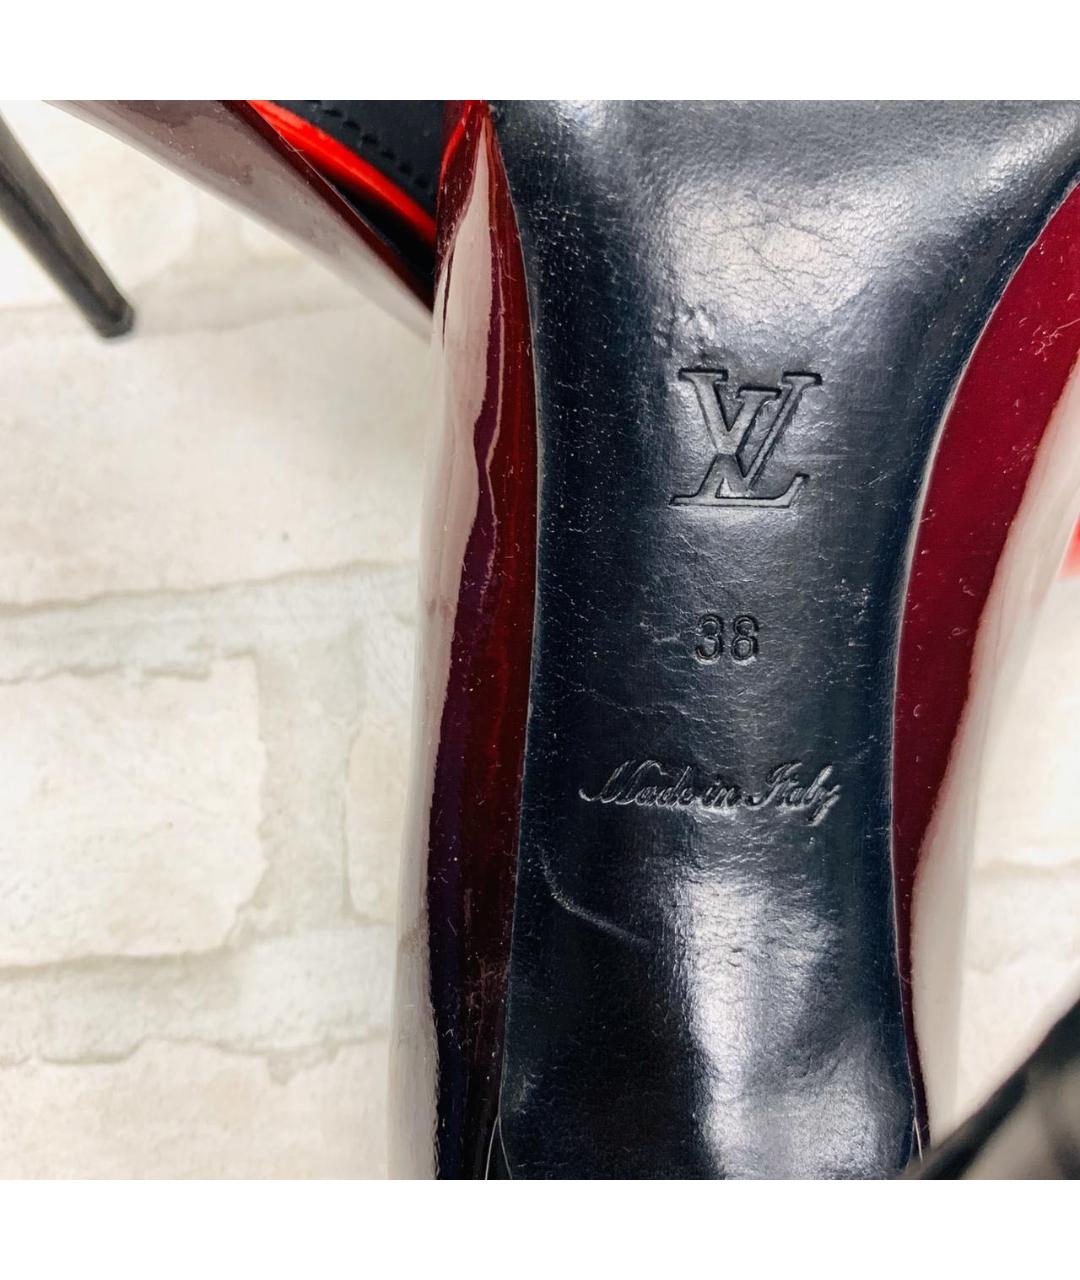 LOUIS VUITTON PRE-OWNED Красные туфли из лакированной кожи, фото 8